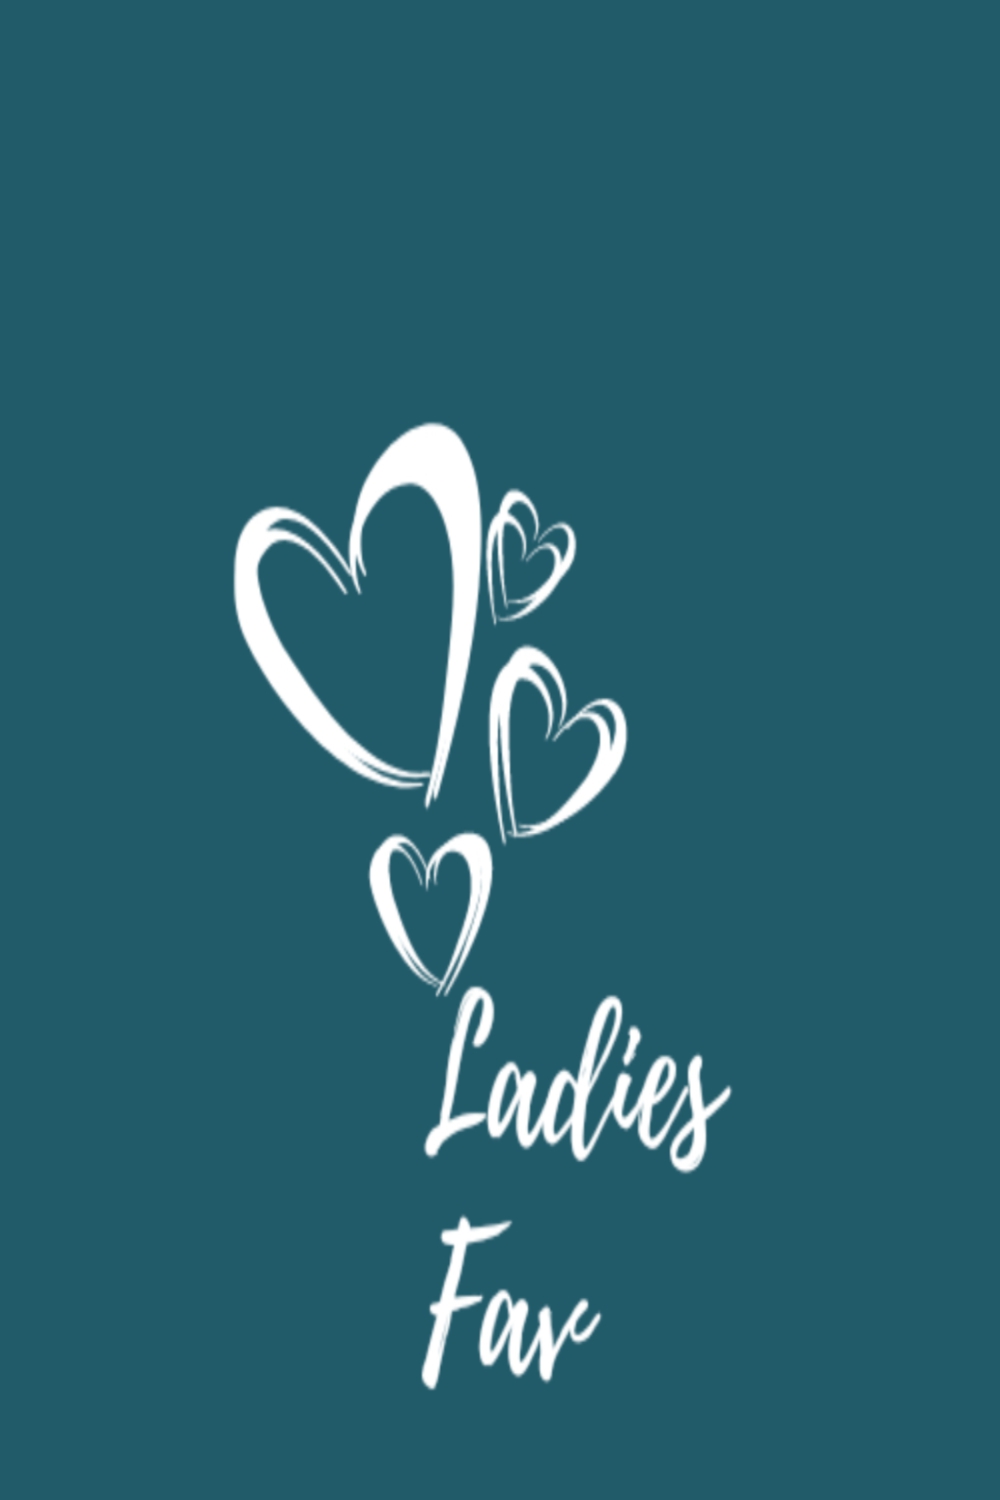 The Ladies Fav Logo Design pinterest preview image.